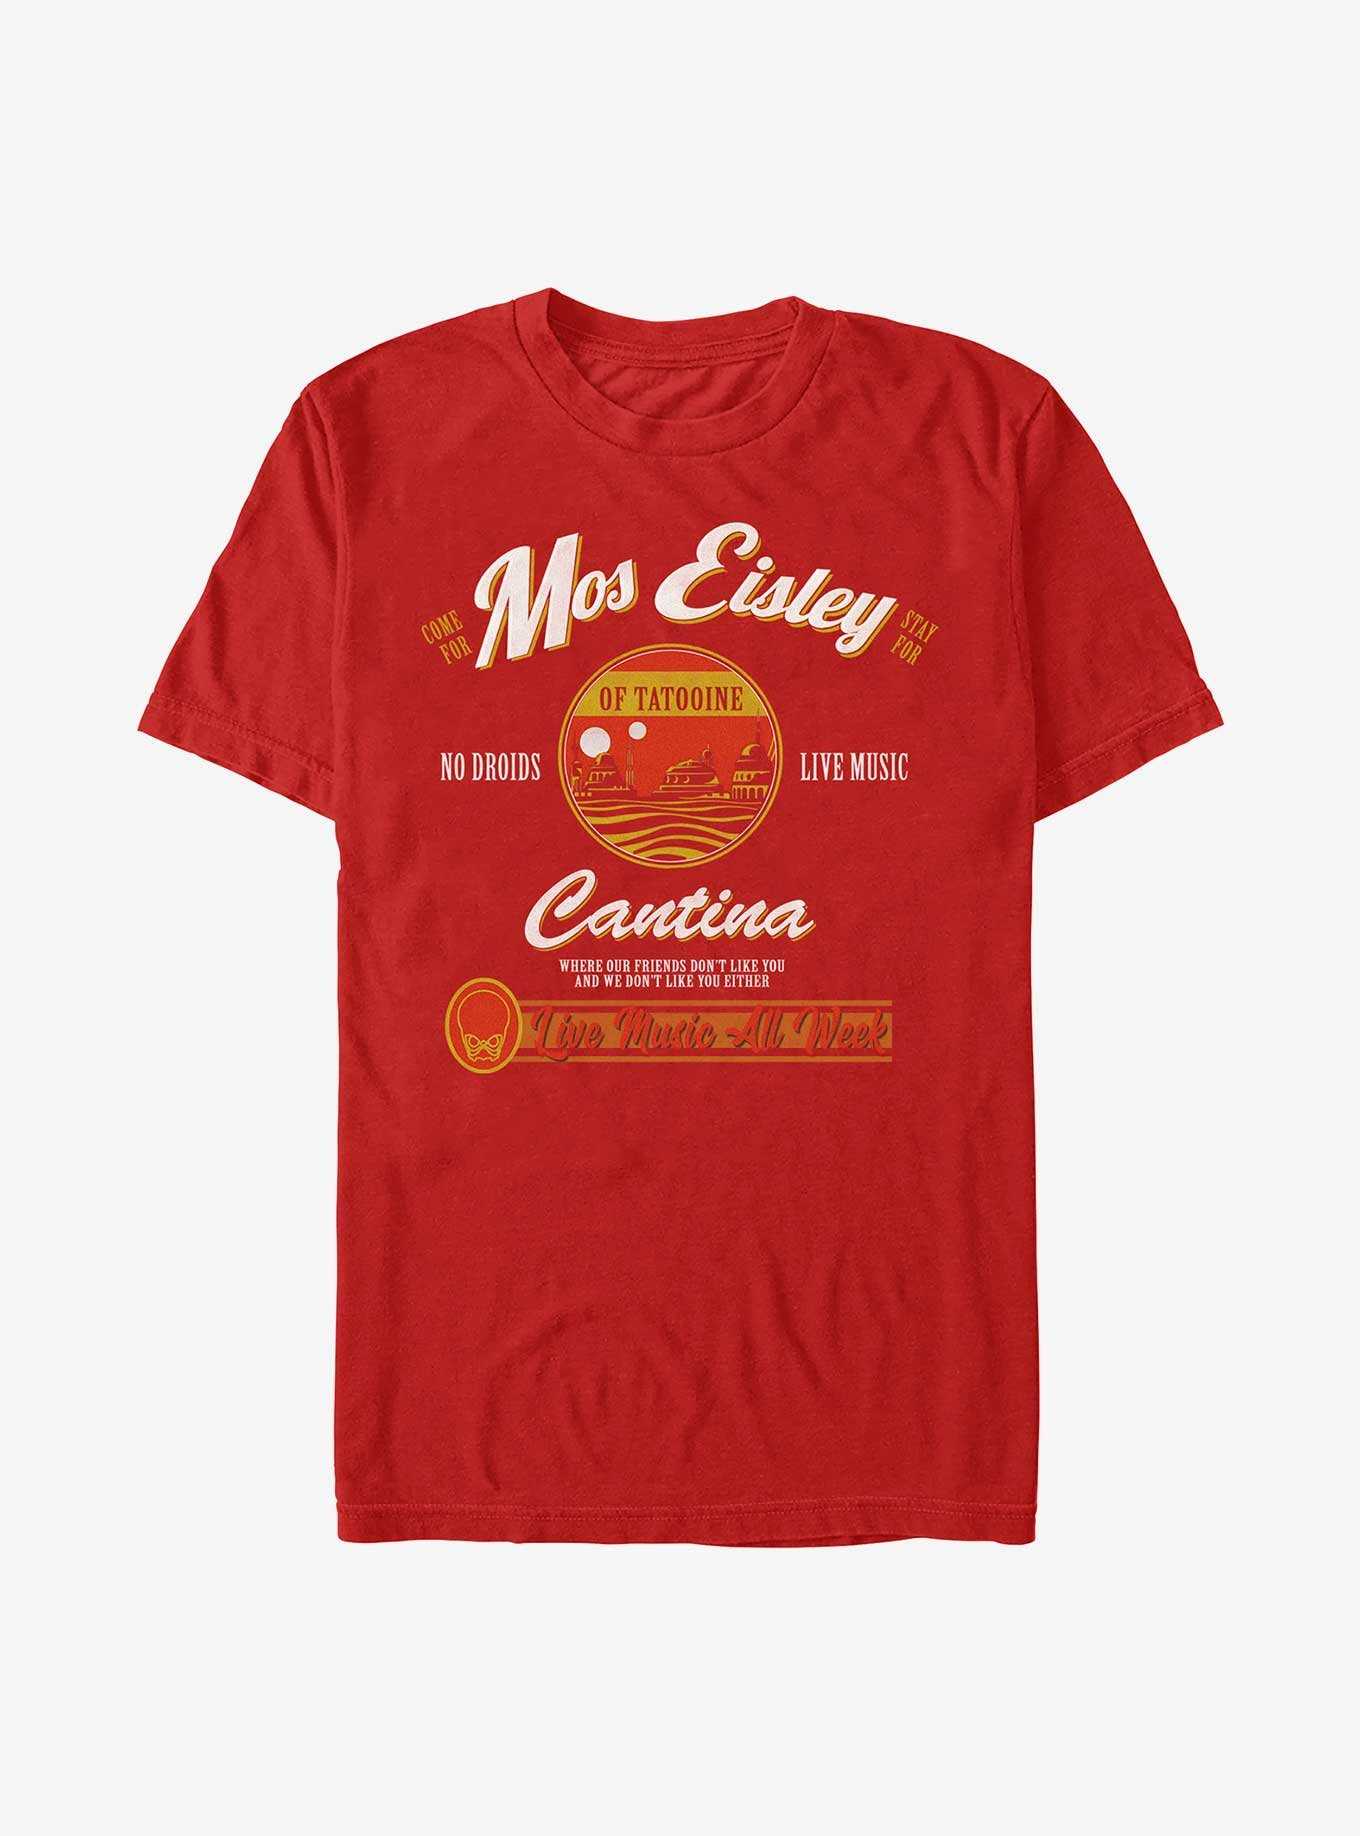 Star Wars Visit Mos Eisley Cantina T-Shirt, , hi-res